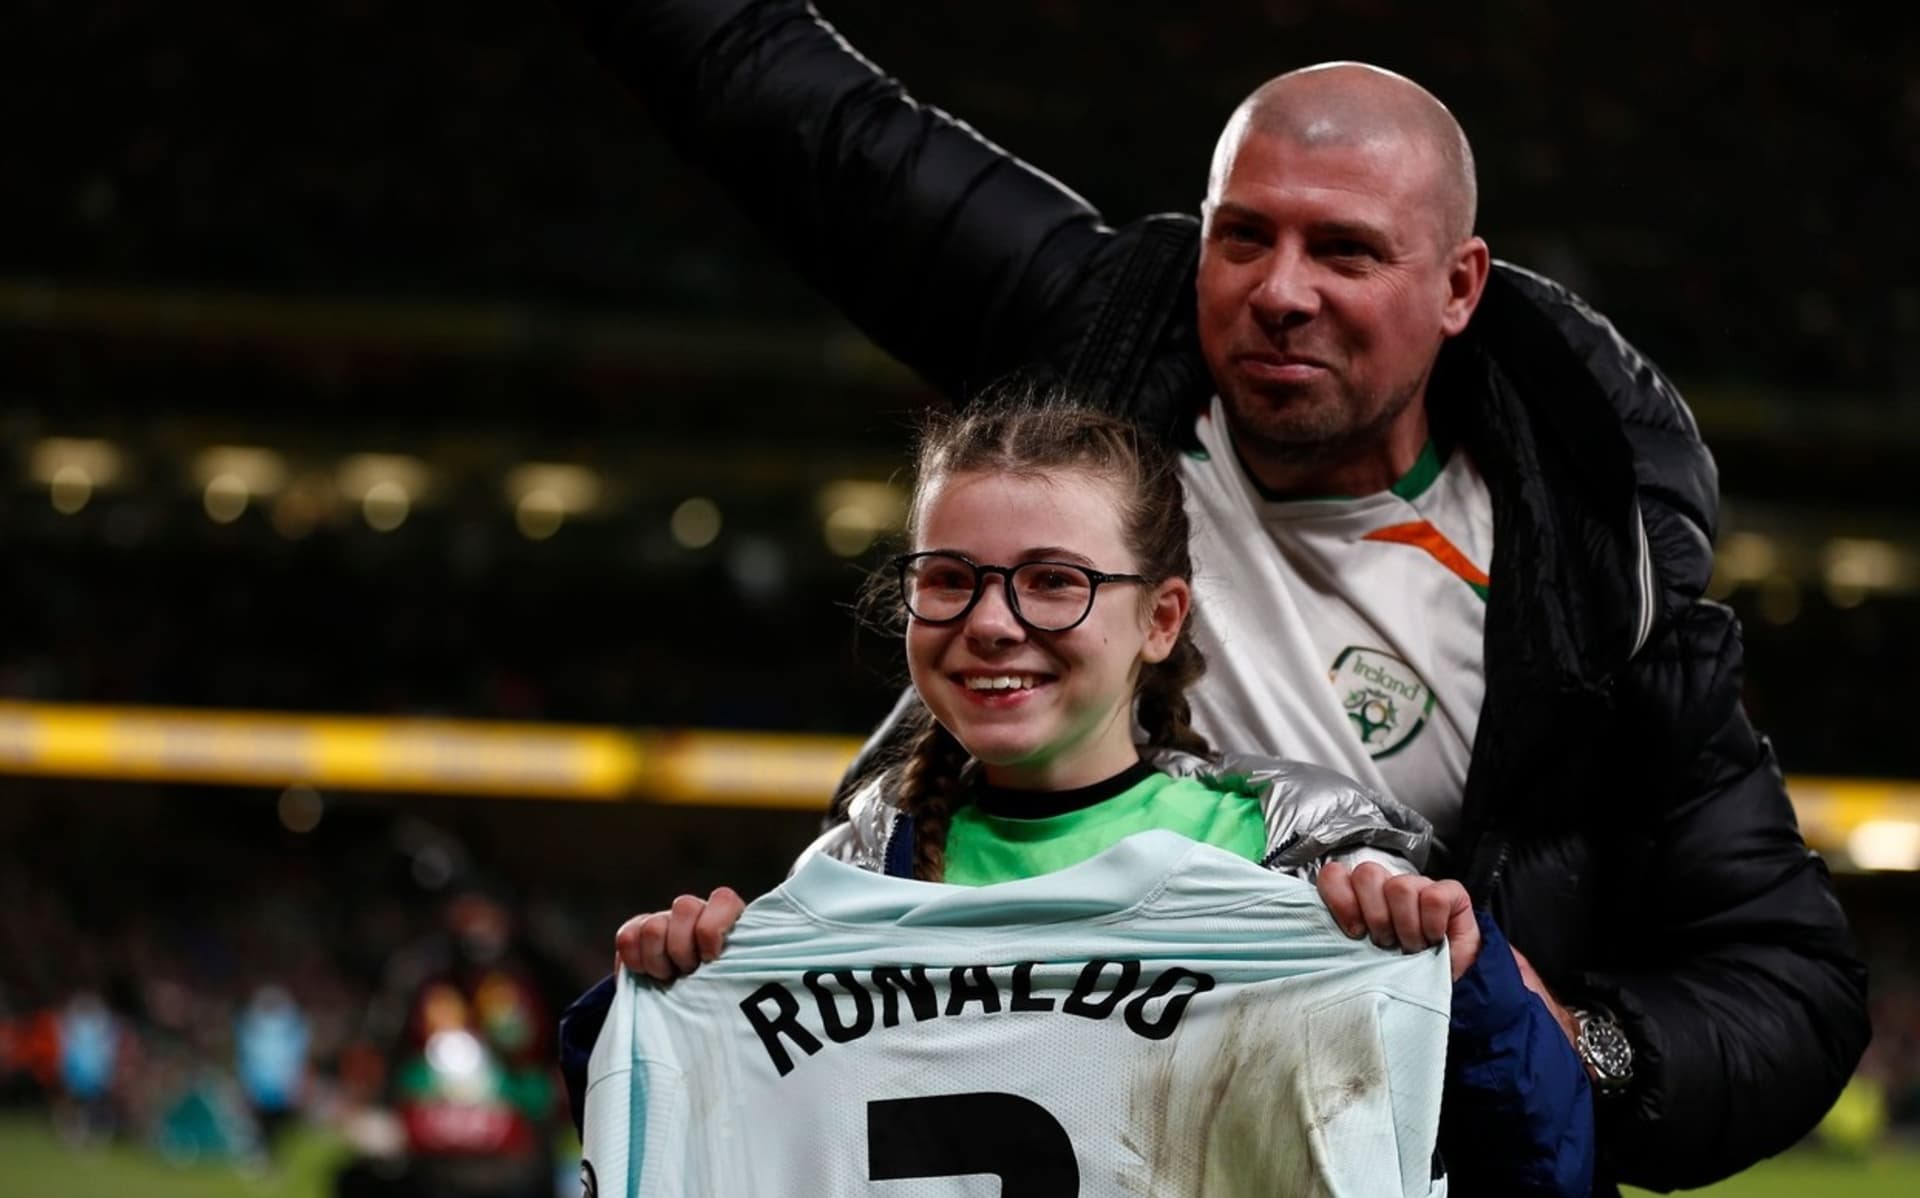 Irská fanynka pózuje s cenným suvenýrem od Cristiana Ronalda.